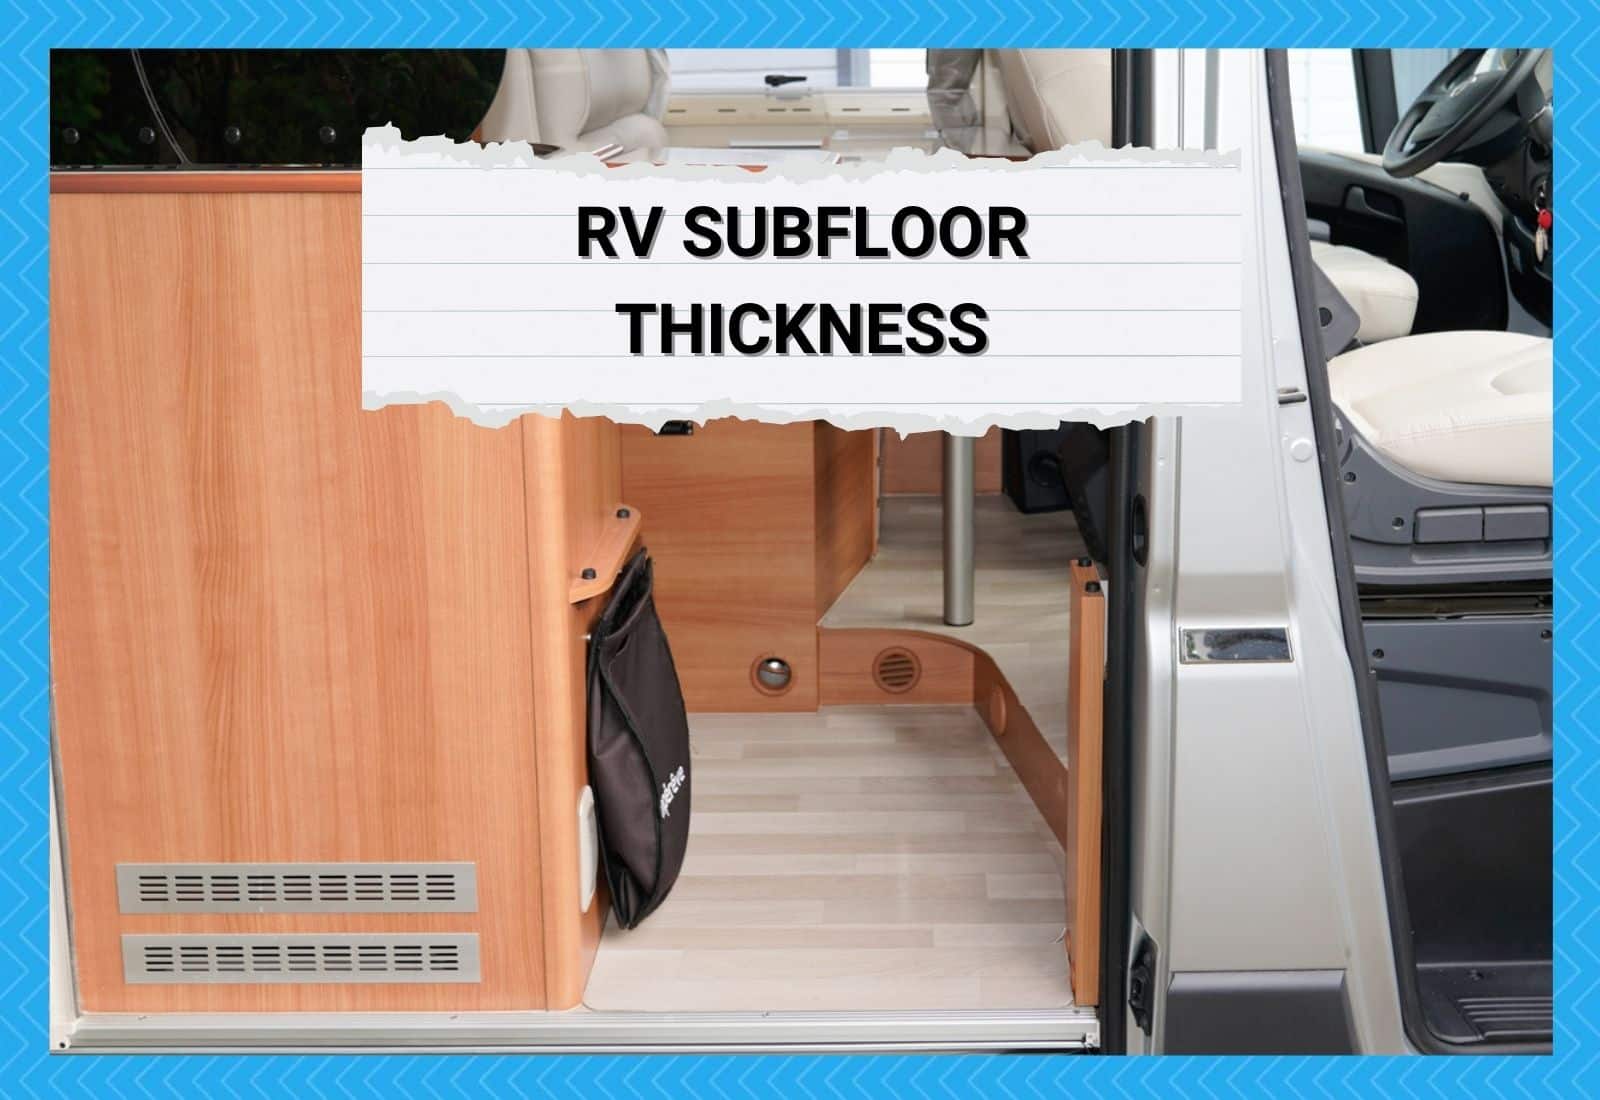 RV Subfloor Thickness